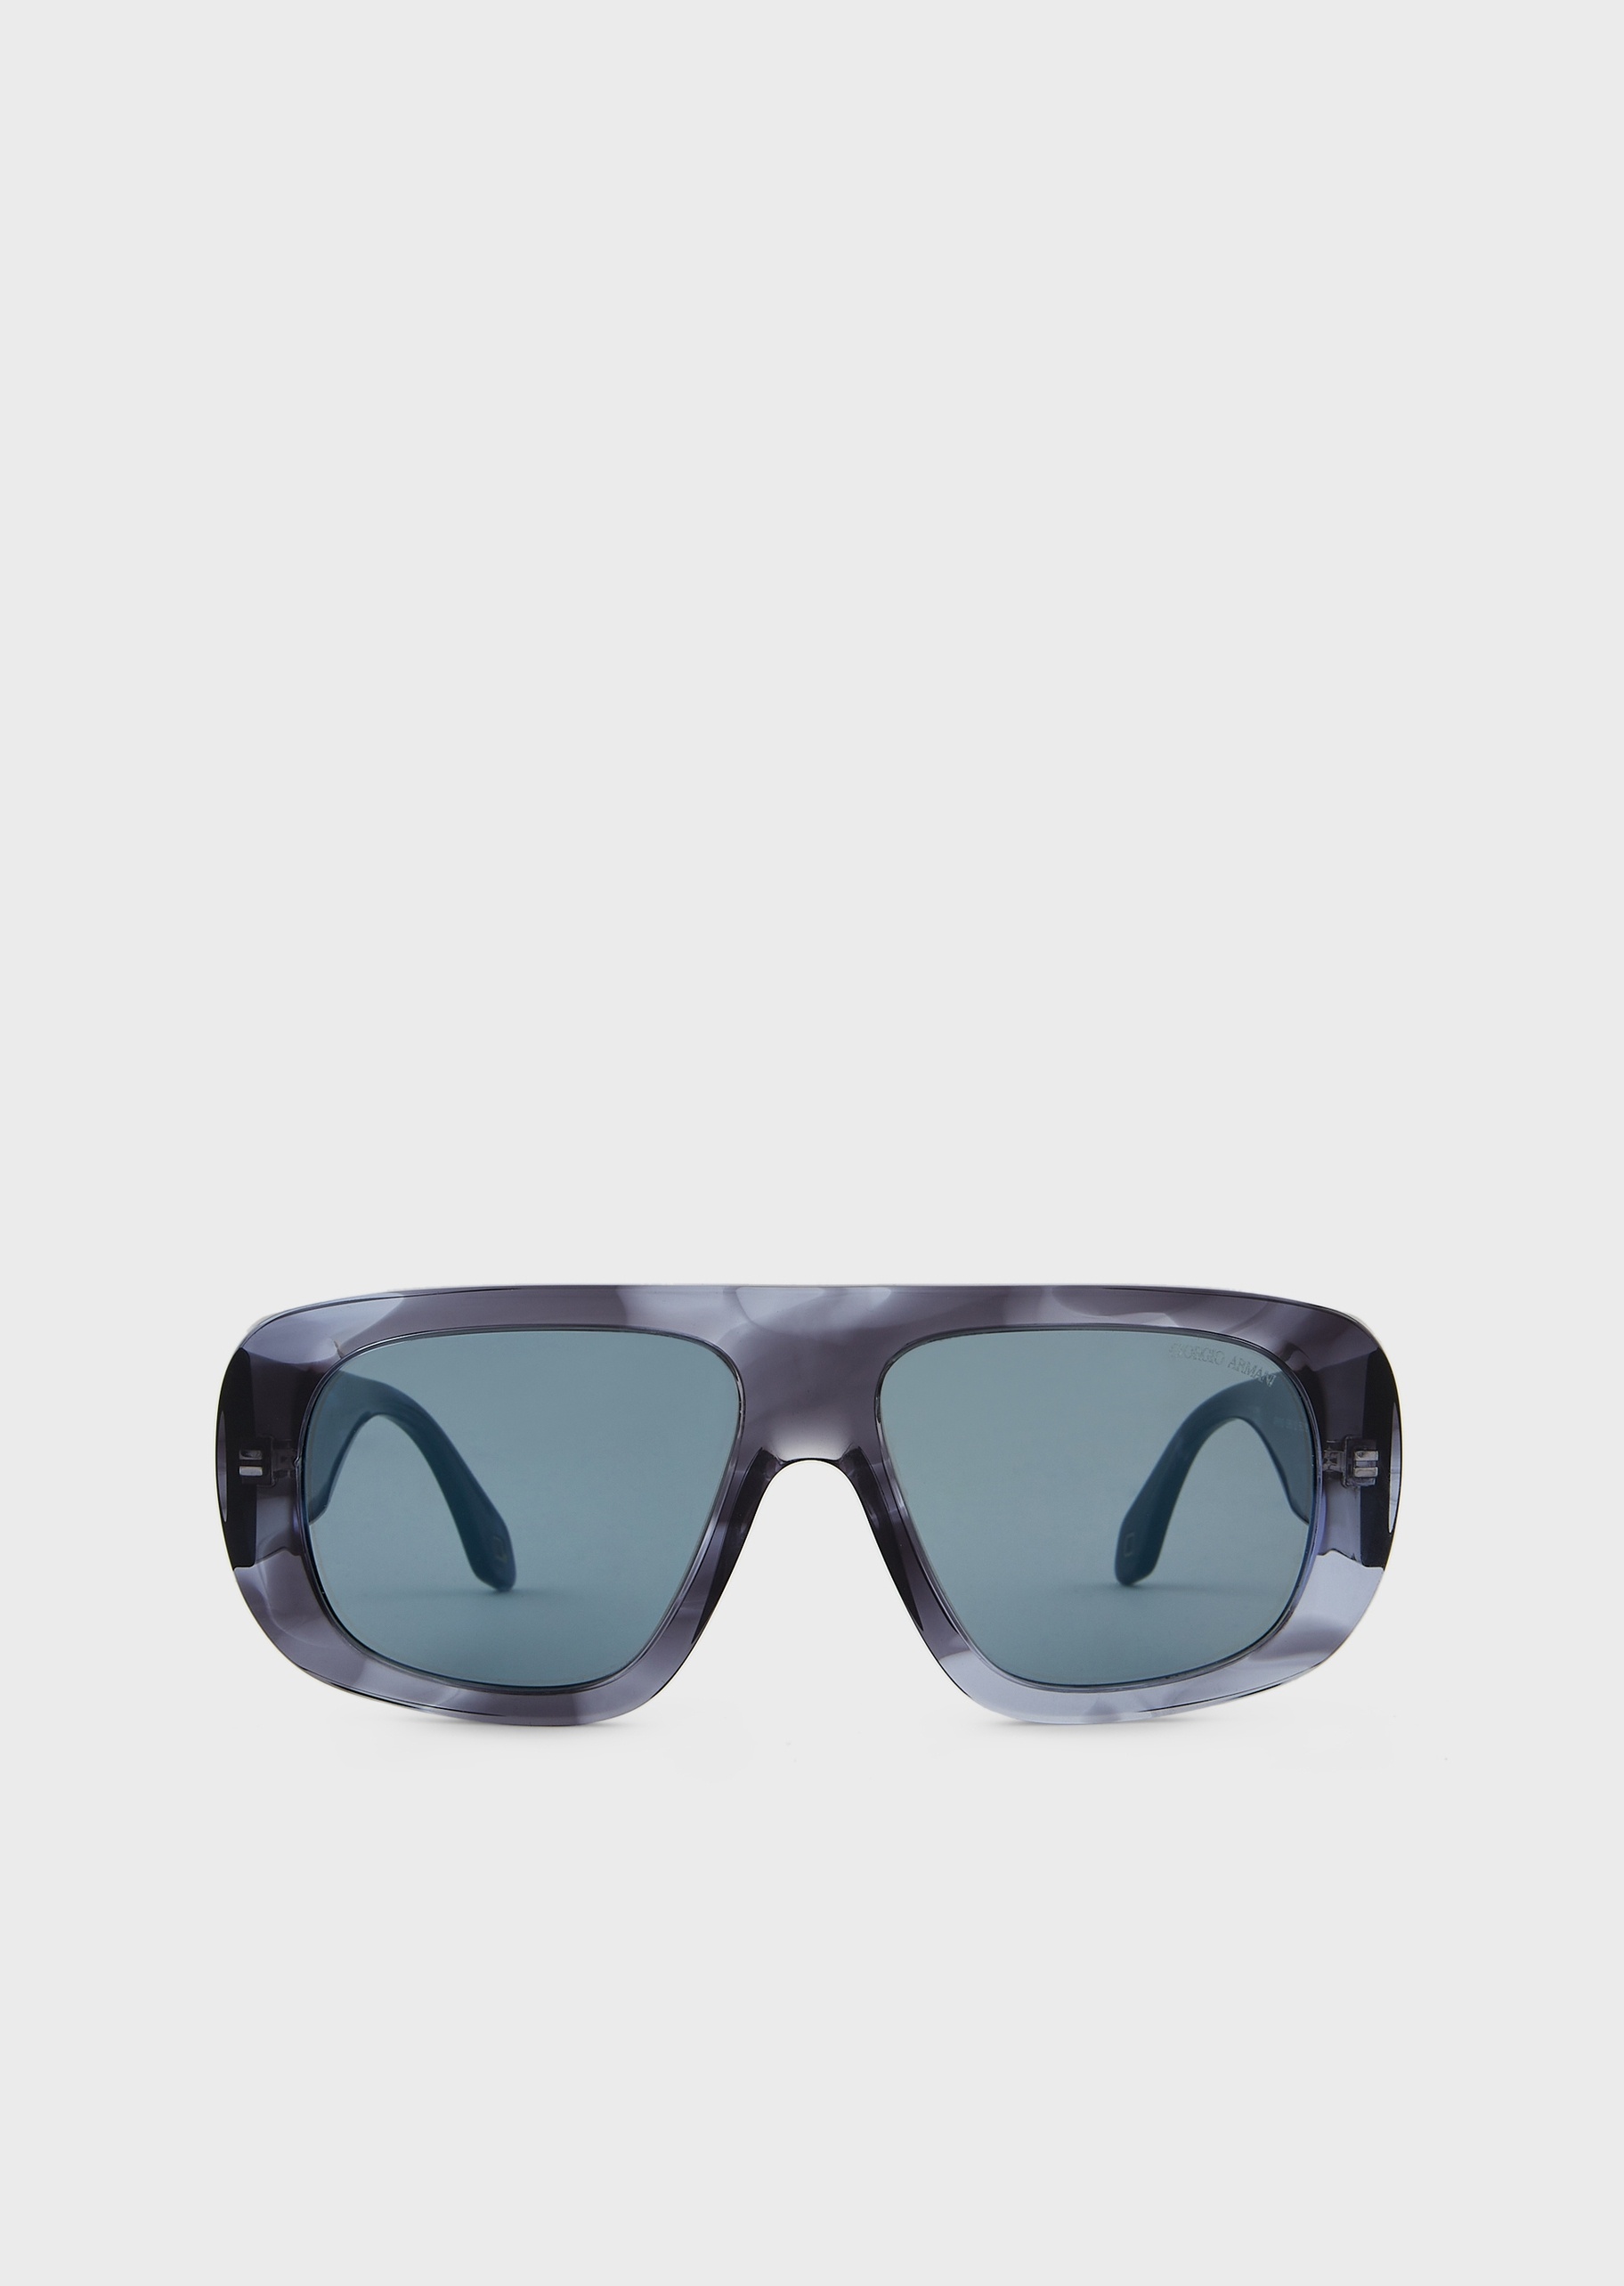 Giorgio Armani 男士个性枕型粗框太阳眼镜